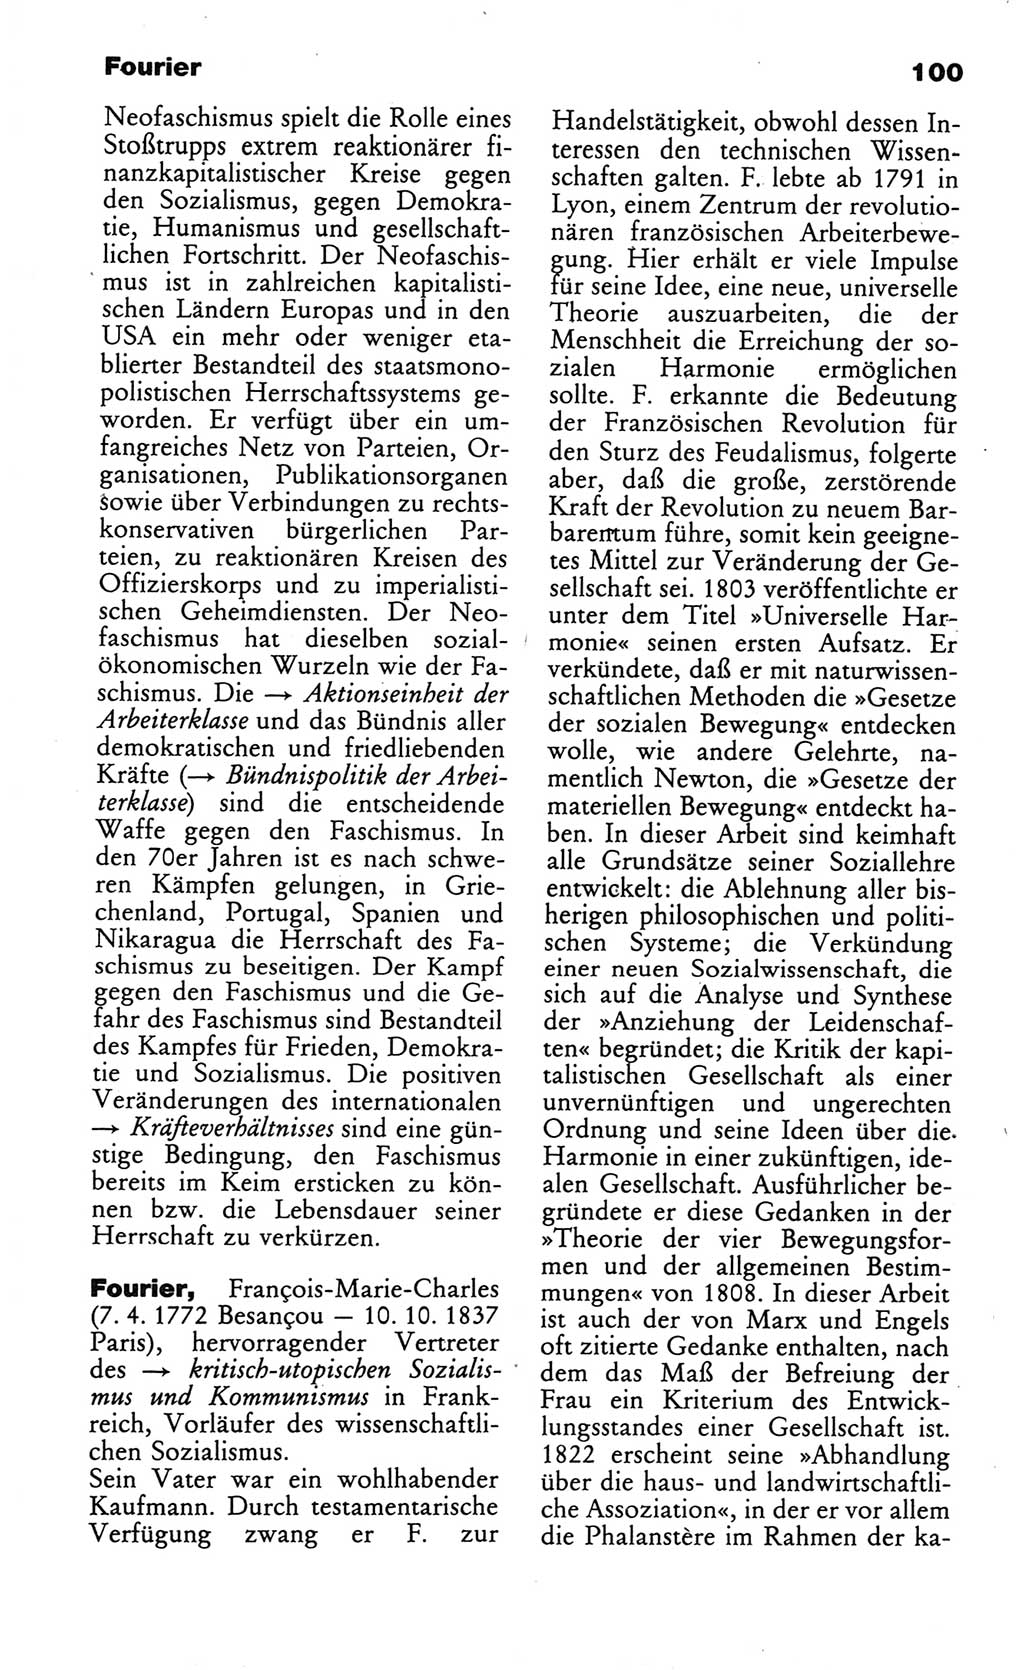 Wörterbuch des wissenschaftlichen Kommunismus [Deutsche Demokratische Republik (DDR)] 1984, Seite 100 (Wb. wiss. Komm. DDR 1984, S. 100)